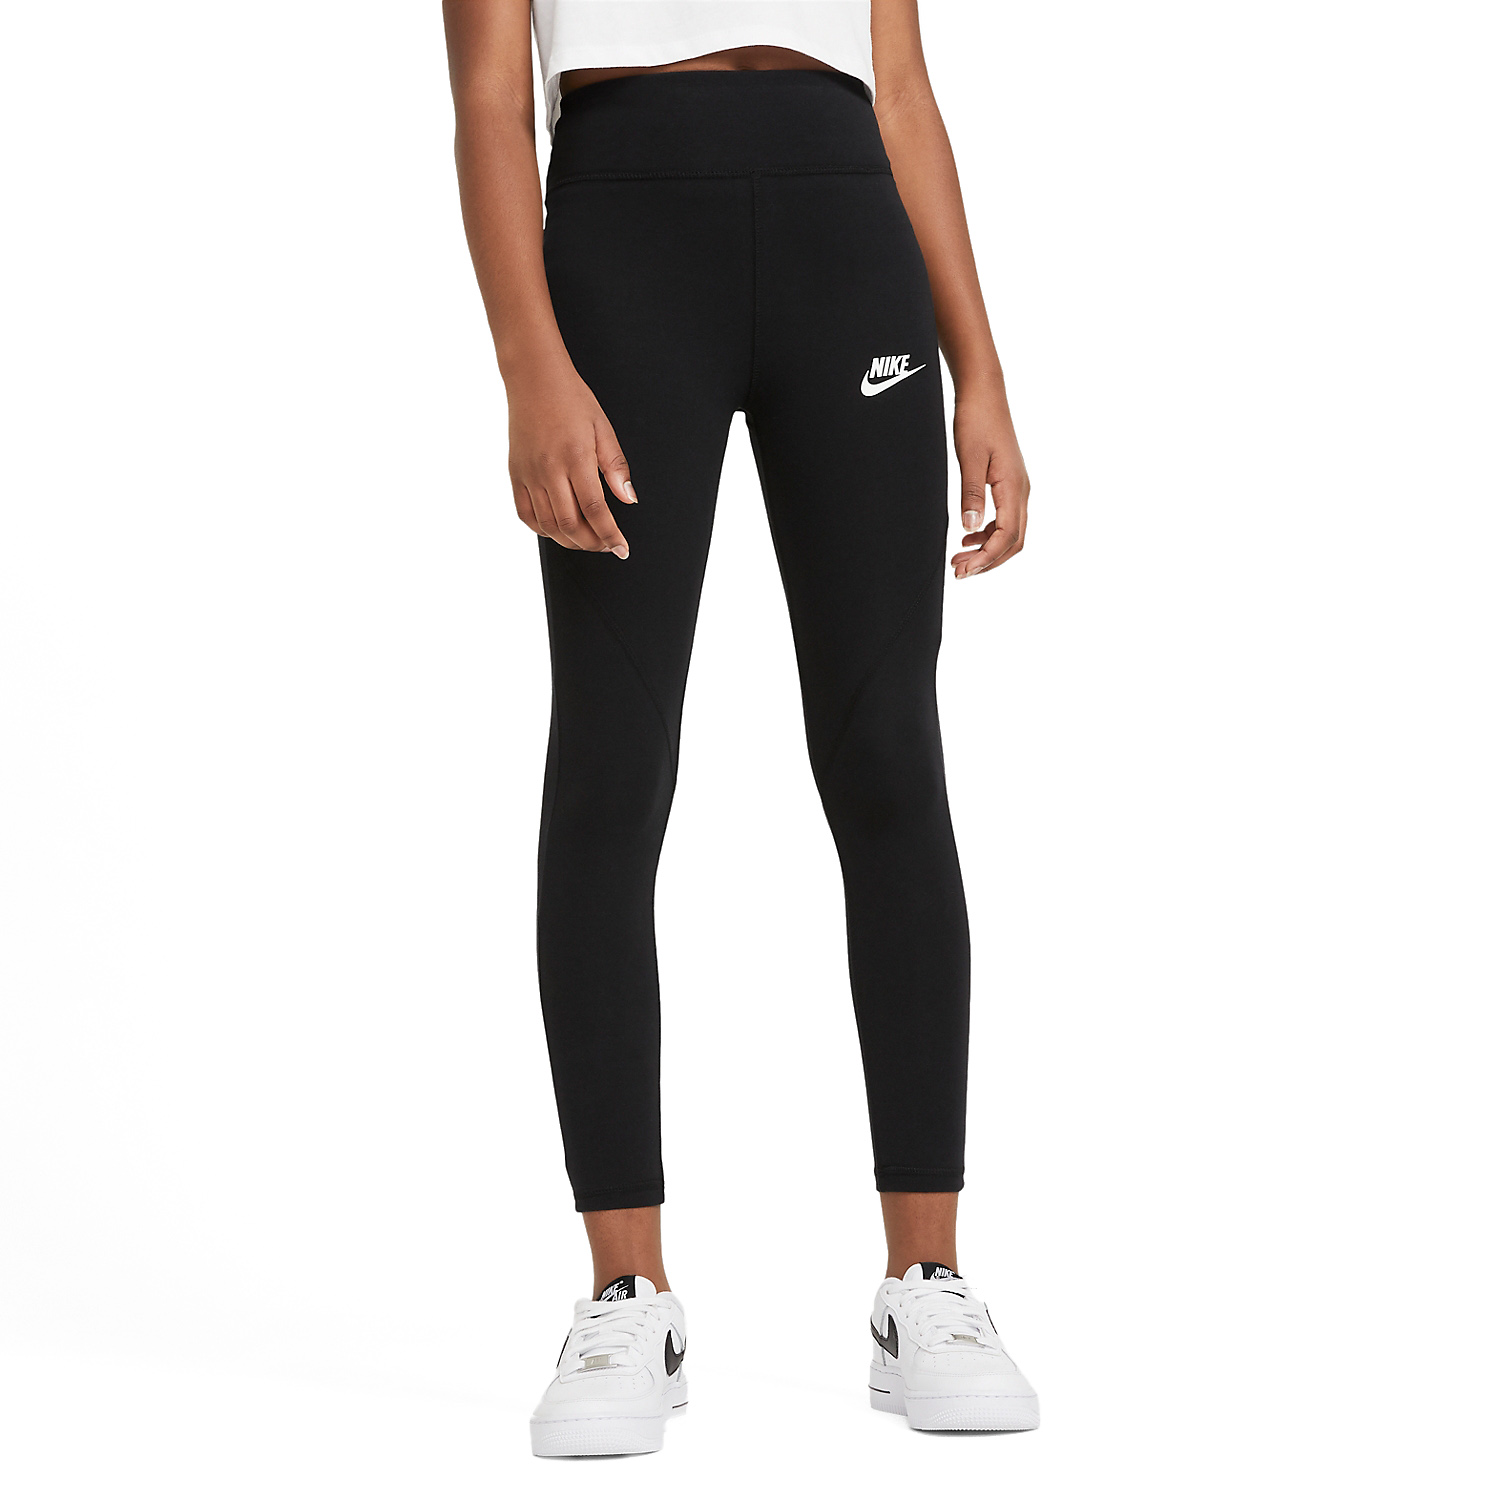 Nike Favorites Logo Tights Girl - Black/White